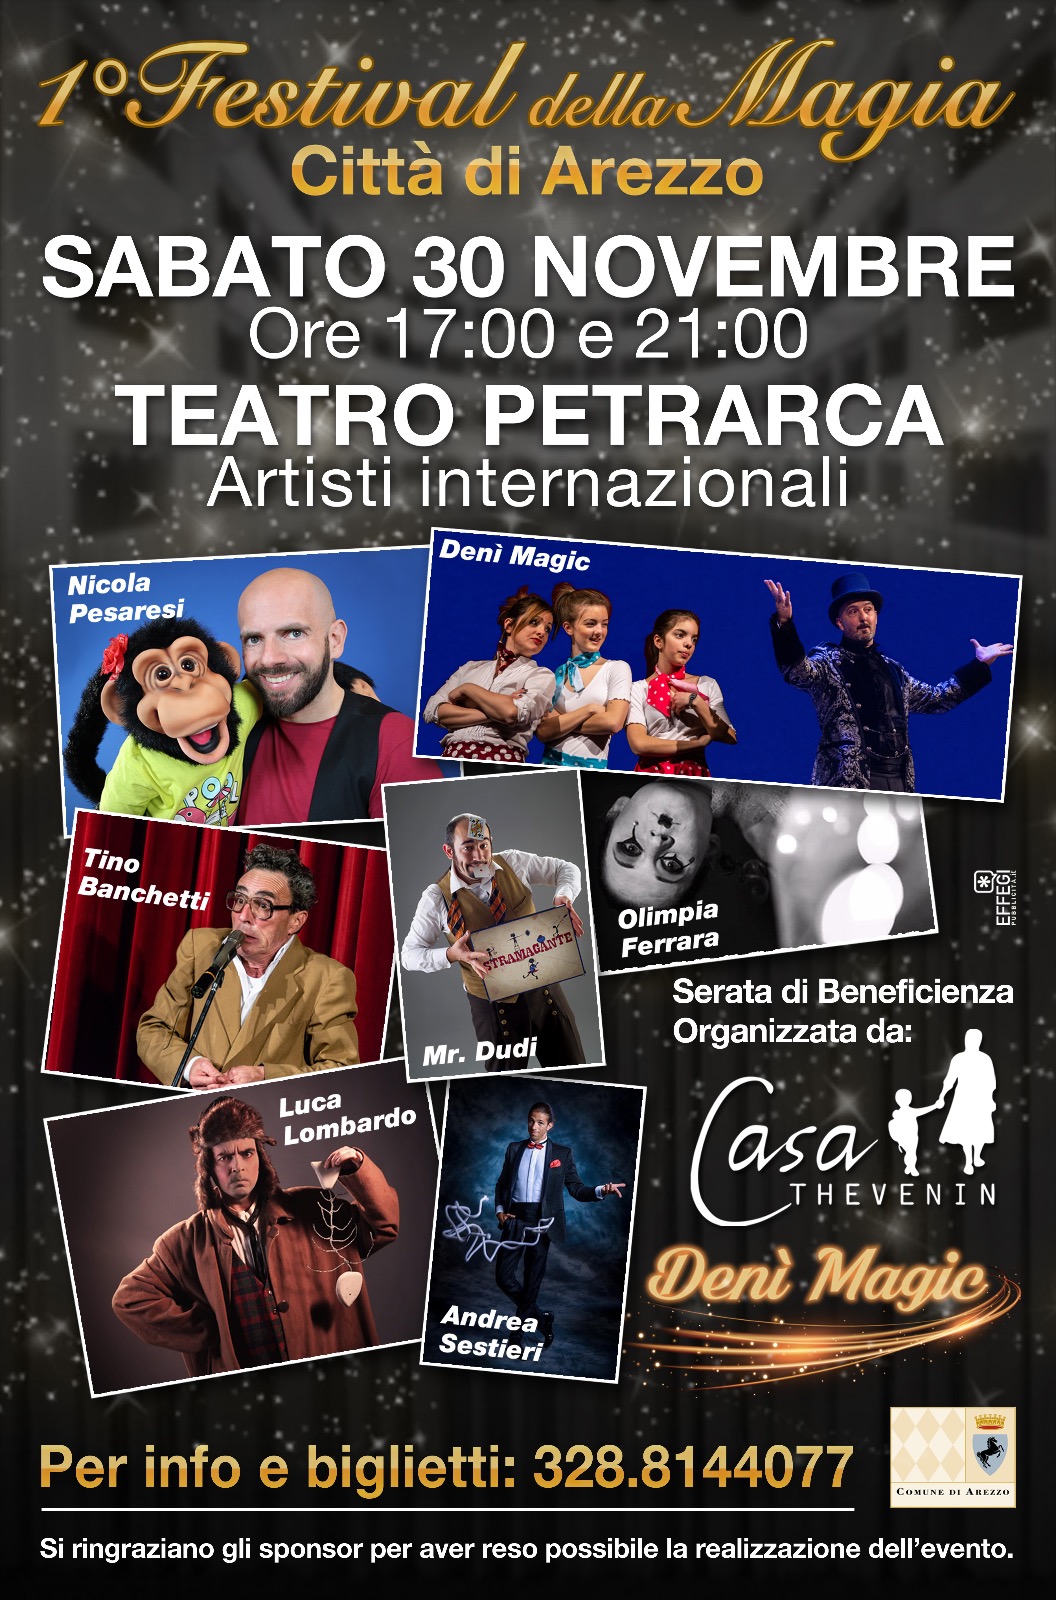 Sabato al teatro Petrarca il 1° festival della magia “Città di Arezzo”